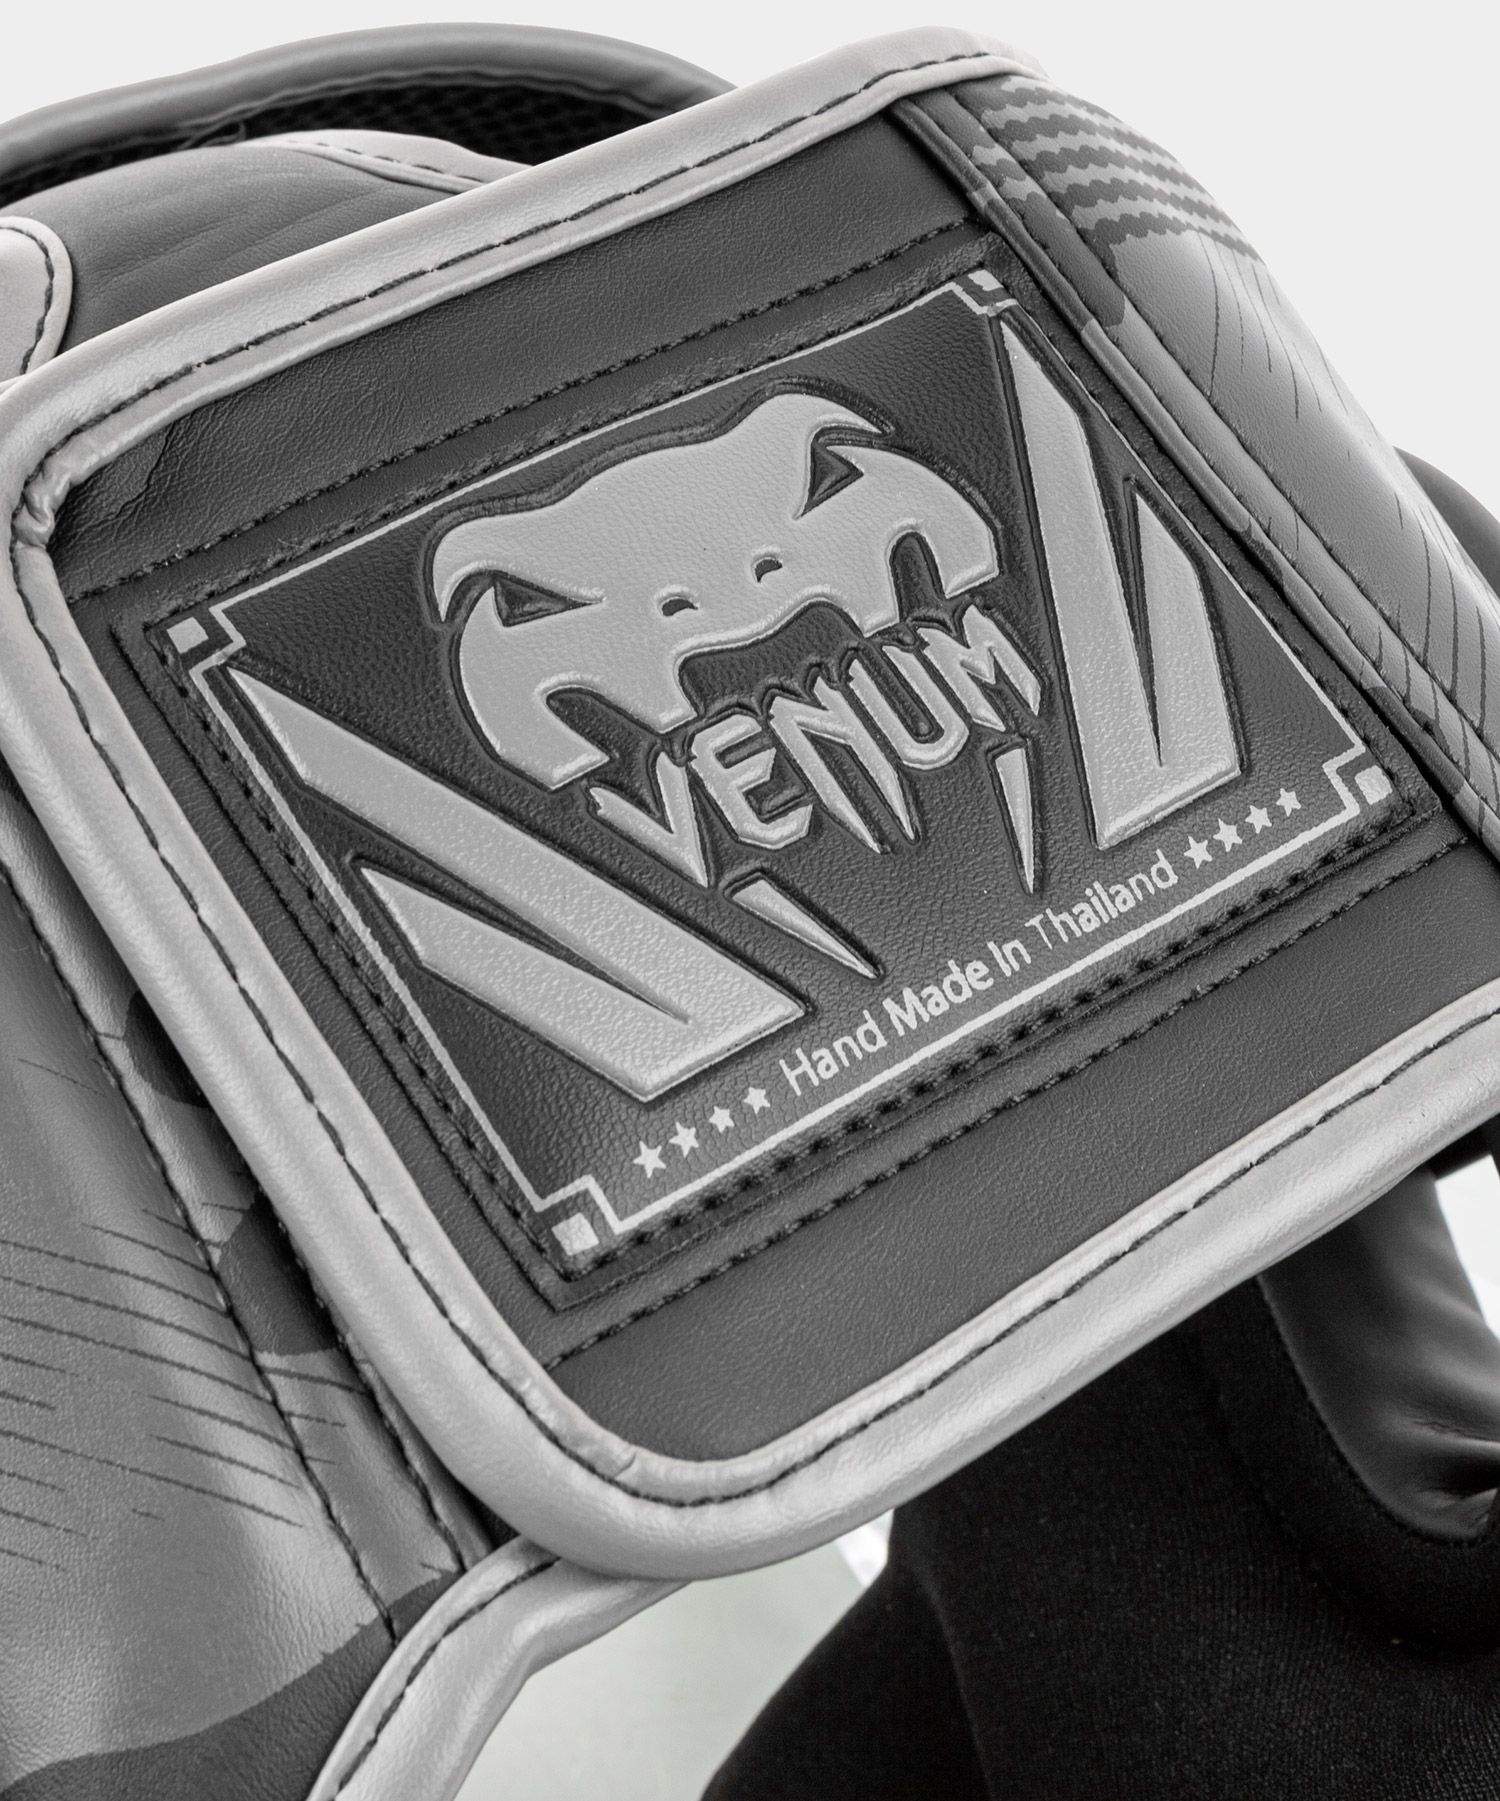 Venum Elite ヘッドギア-ブラック/ダークカモ